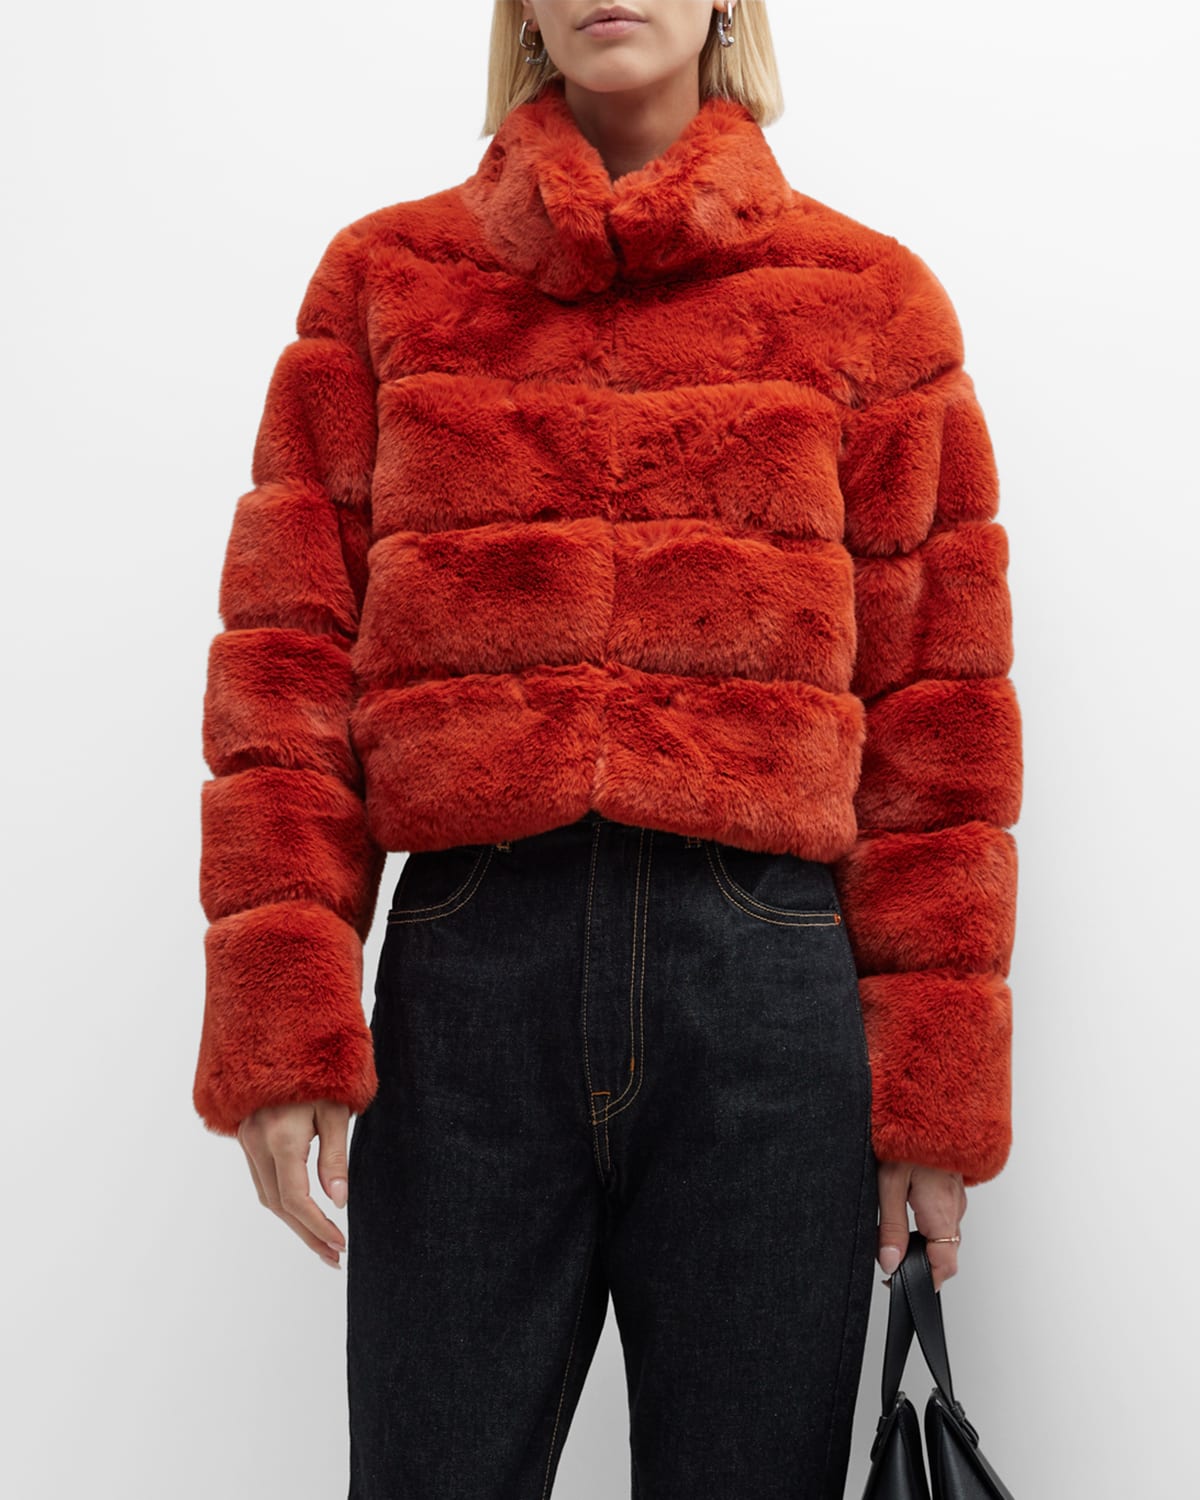 Le Superbe Power Trip Faux-Fur Jacket | Neiman Marcus